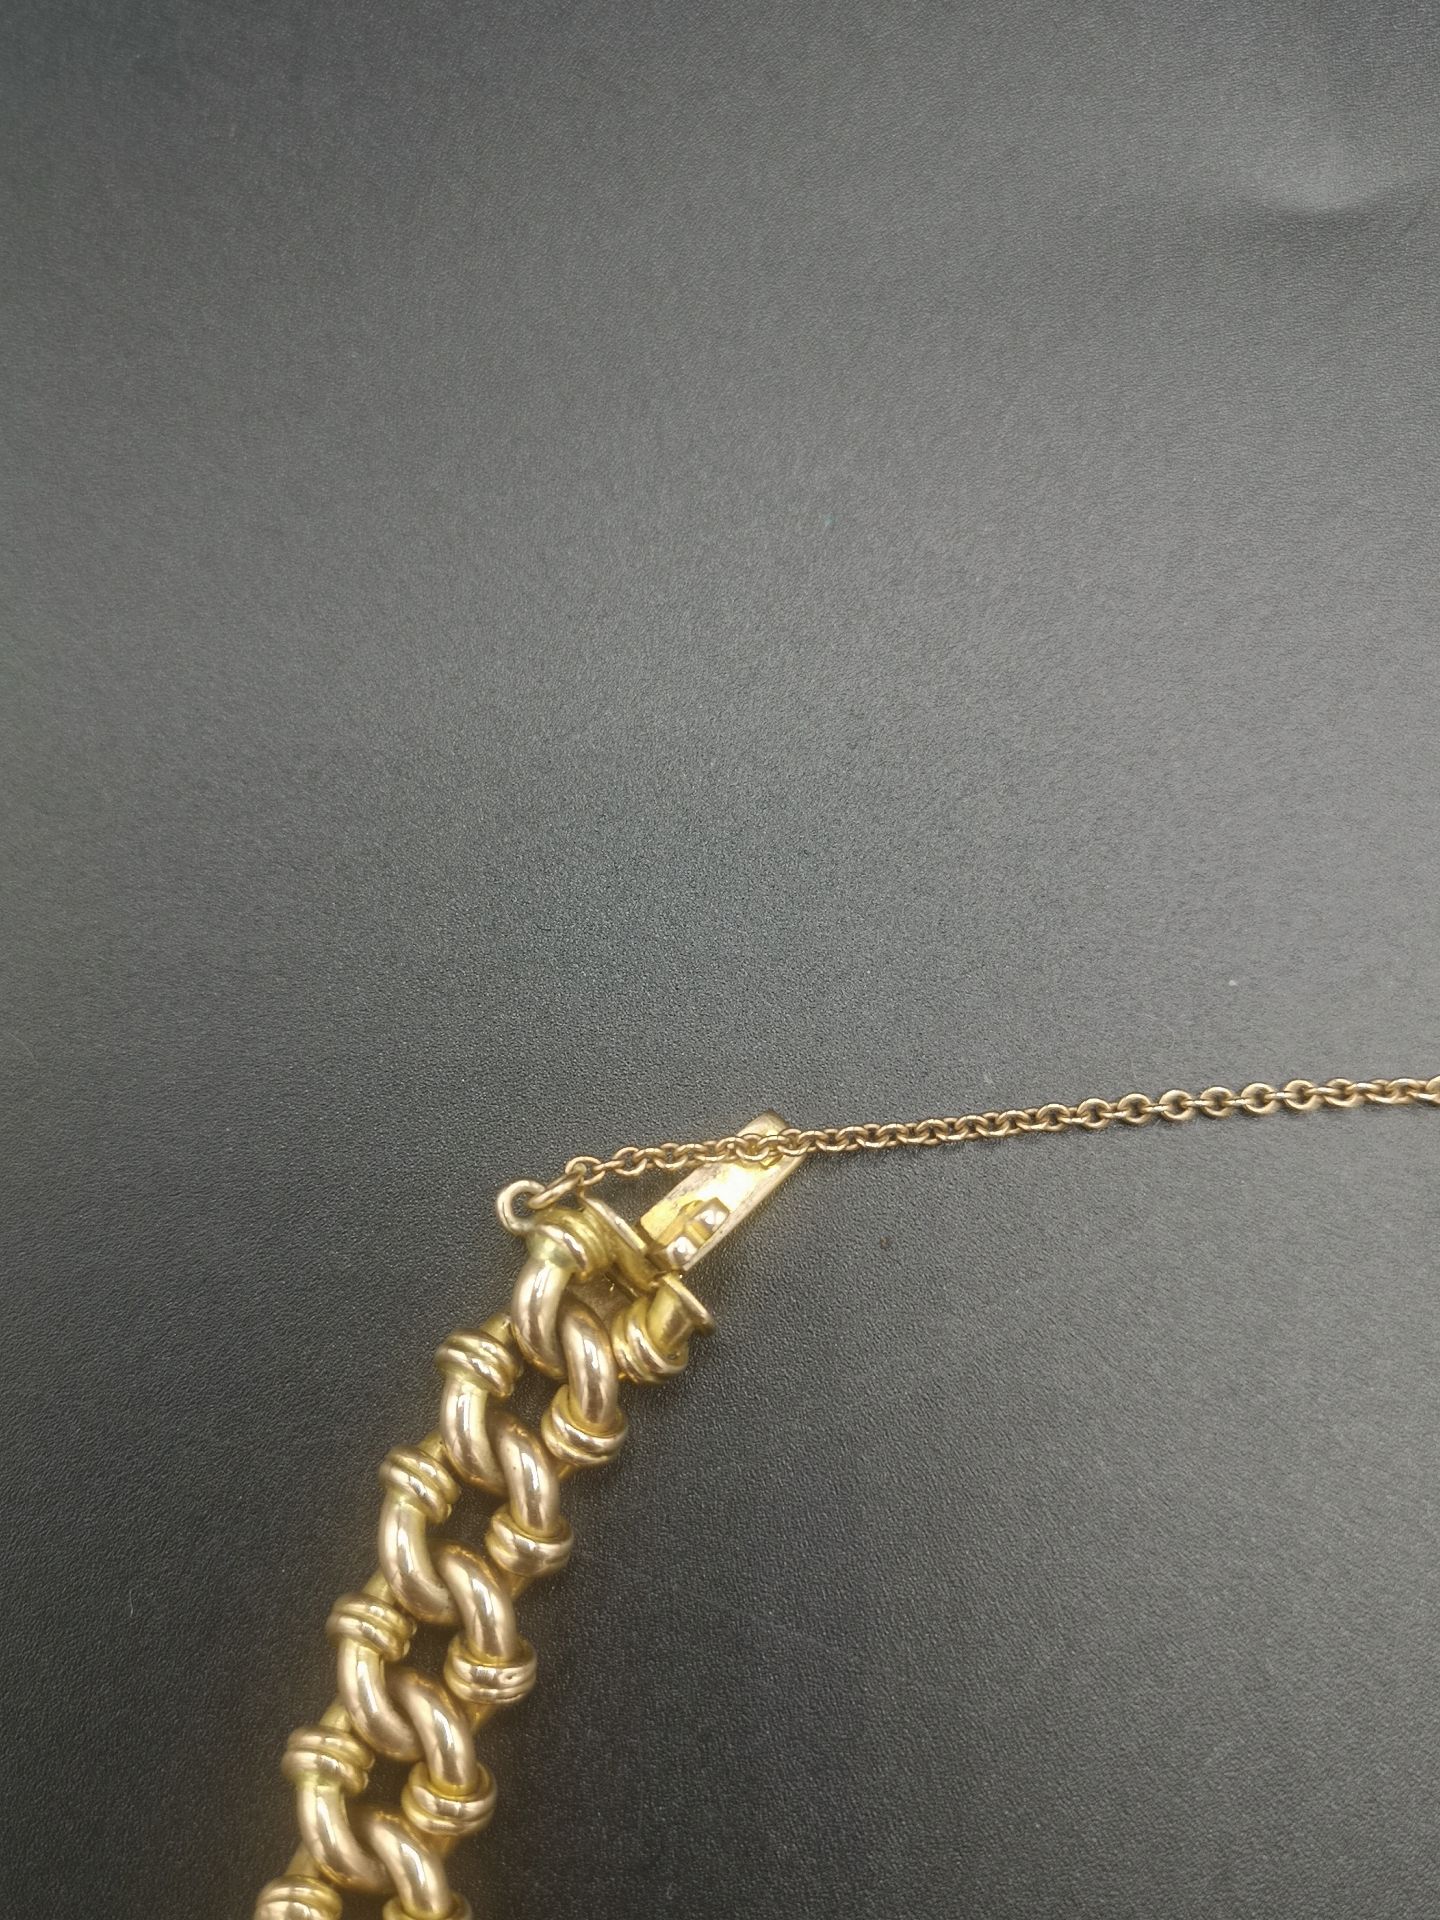 9ct gold link bracelet - Image 4 of 5